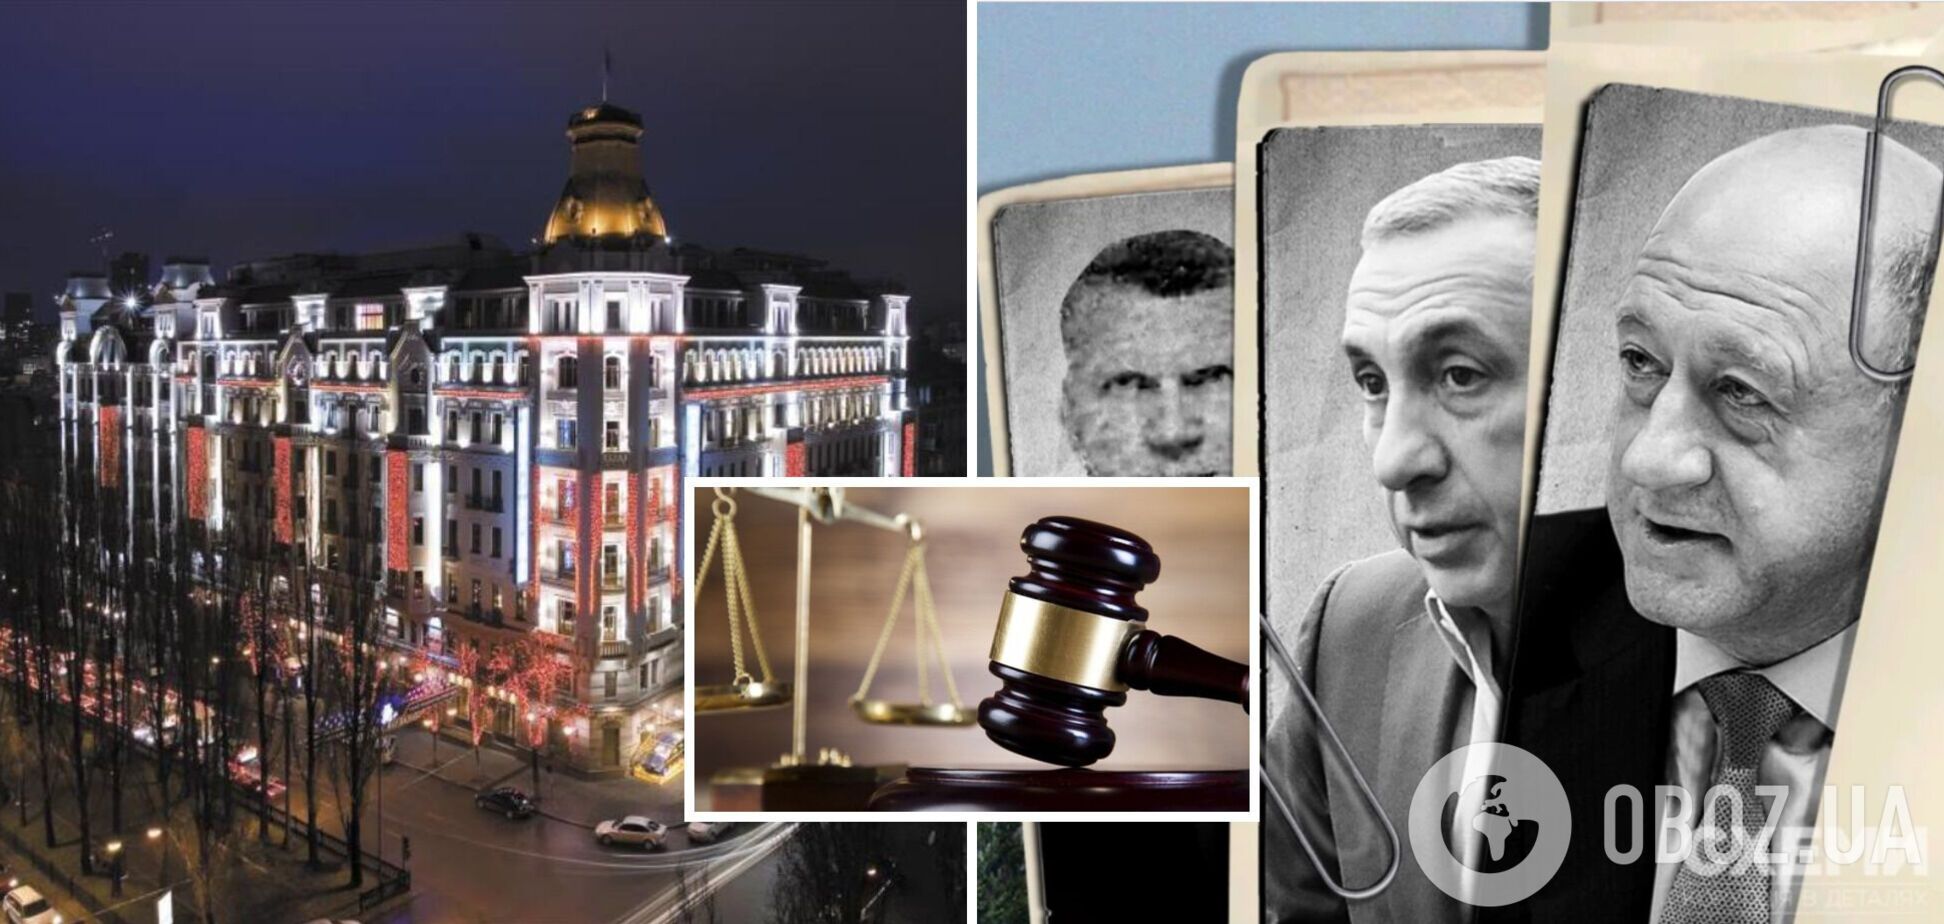 Суд заарештував низку люксових готелів в Україні, якими володіють поплічники Путіна і 'злодій в законі' 